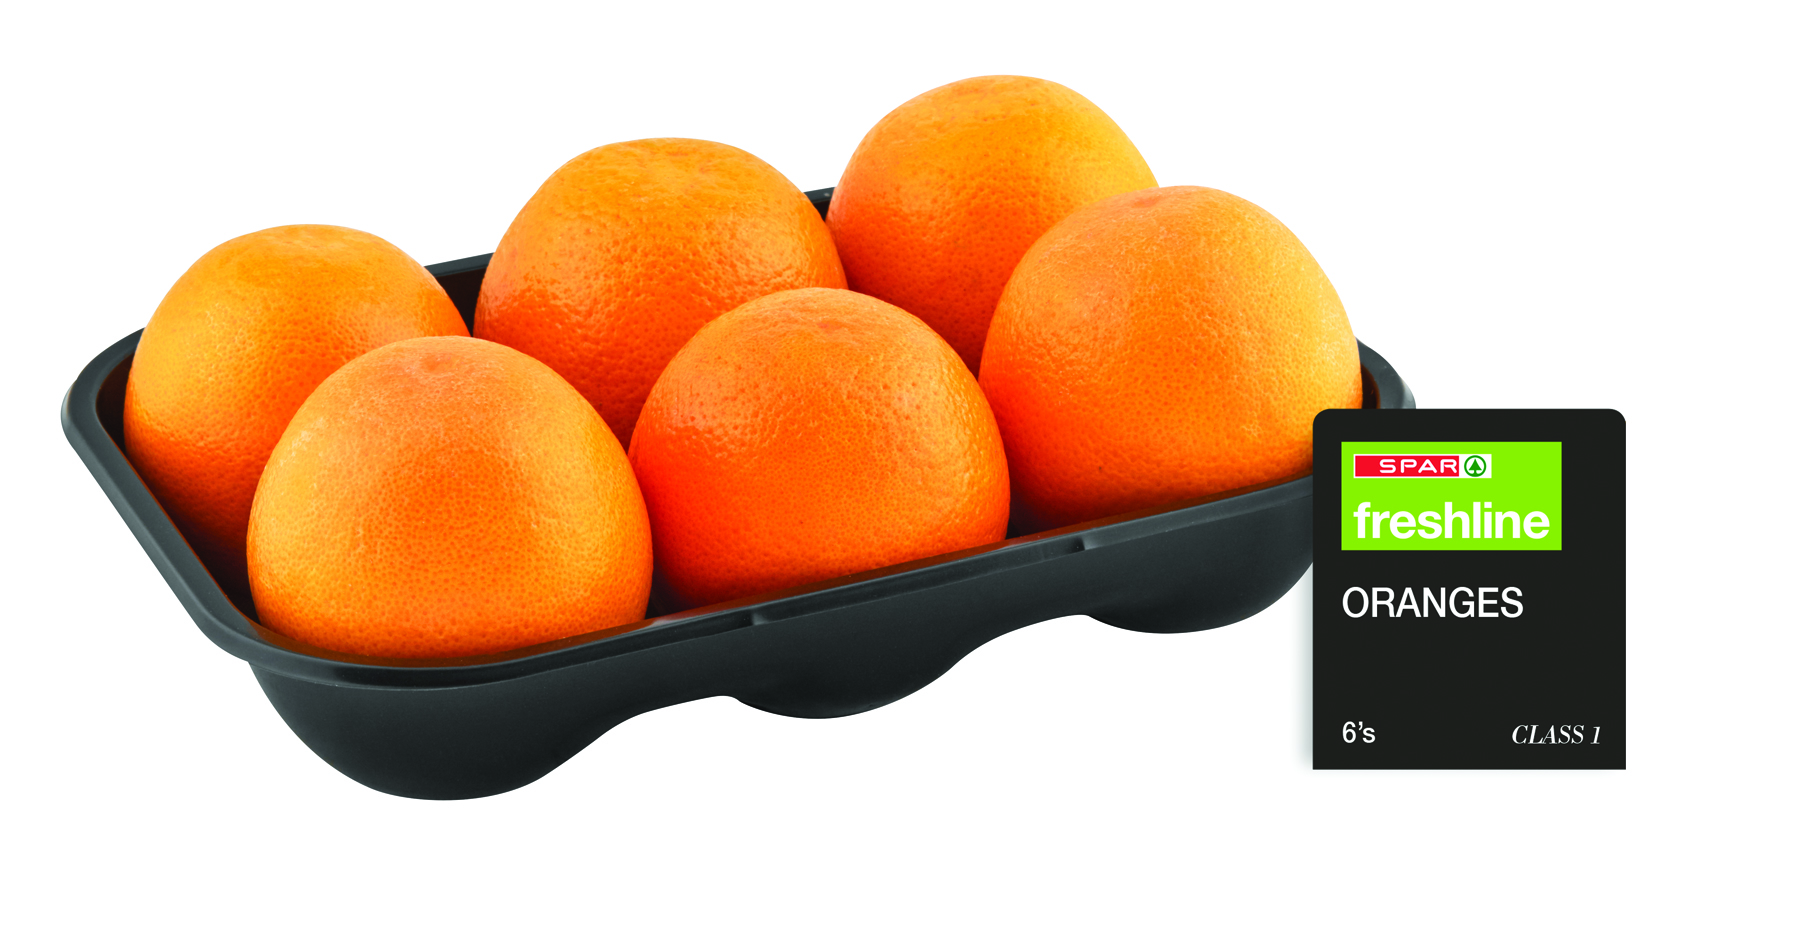 freshline oranges   